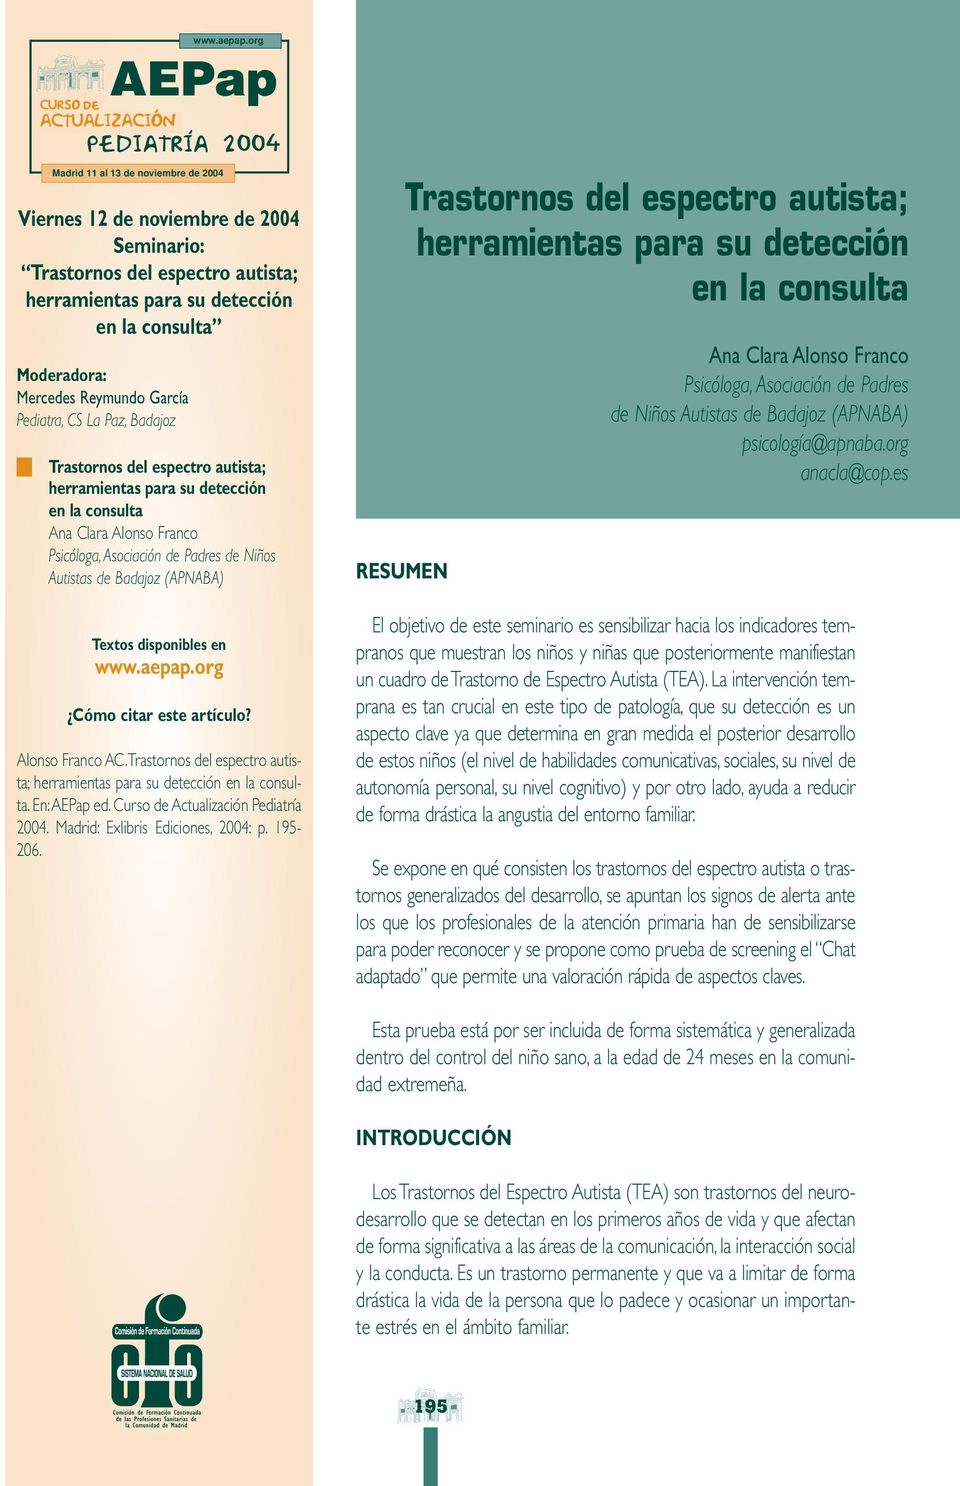 11 al 13 de noviembre de 2004 Trastornos del espectro autista; herramientas para su detección en la consulta Ana Clara Alonso Franco Psicóloga, Asociación de Padres de Niños Autistas de Badajoz